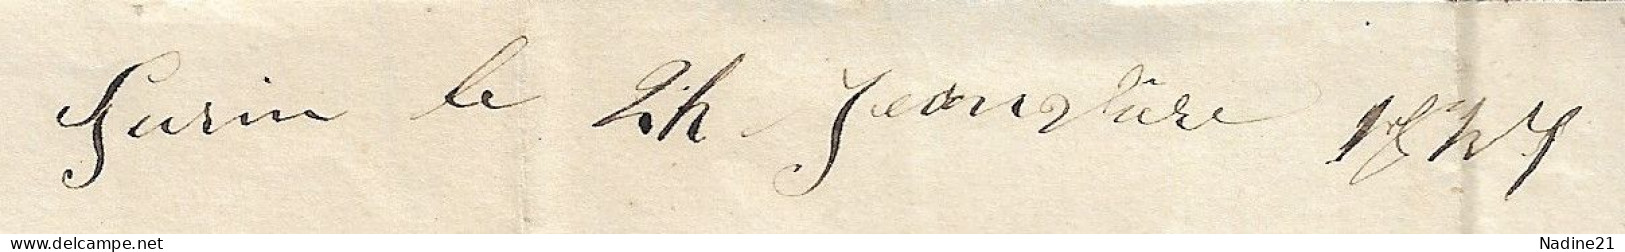 1847. Lettre. Avec Corresp. 1847 Tampon Turin (TORINO 25 GENN.) à Dest. FRANCE - Taxe 8 De Port Payé - Unclassified